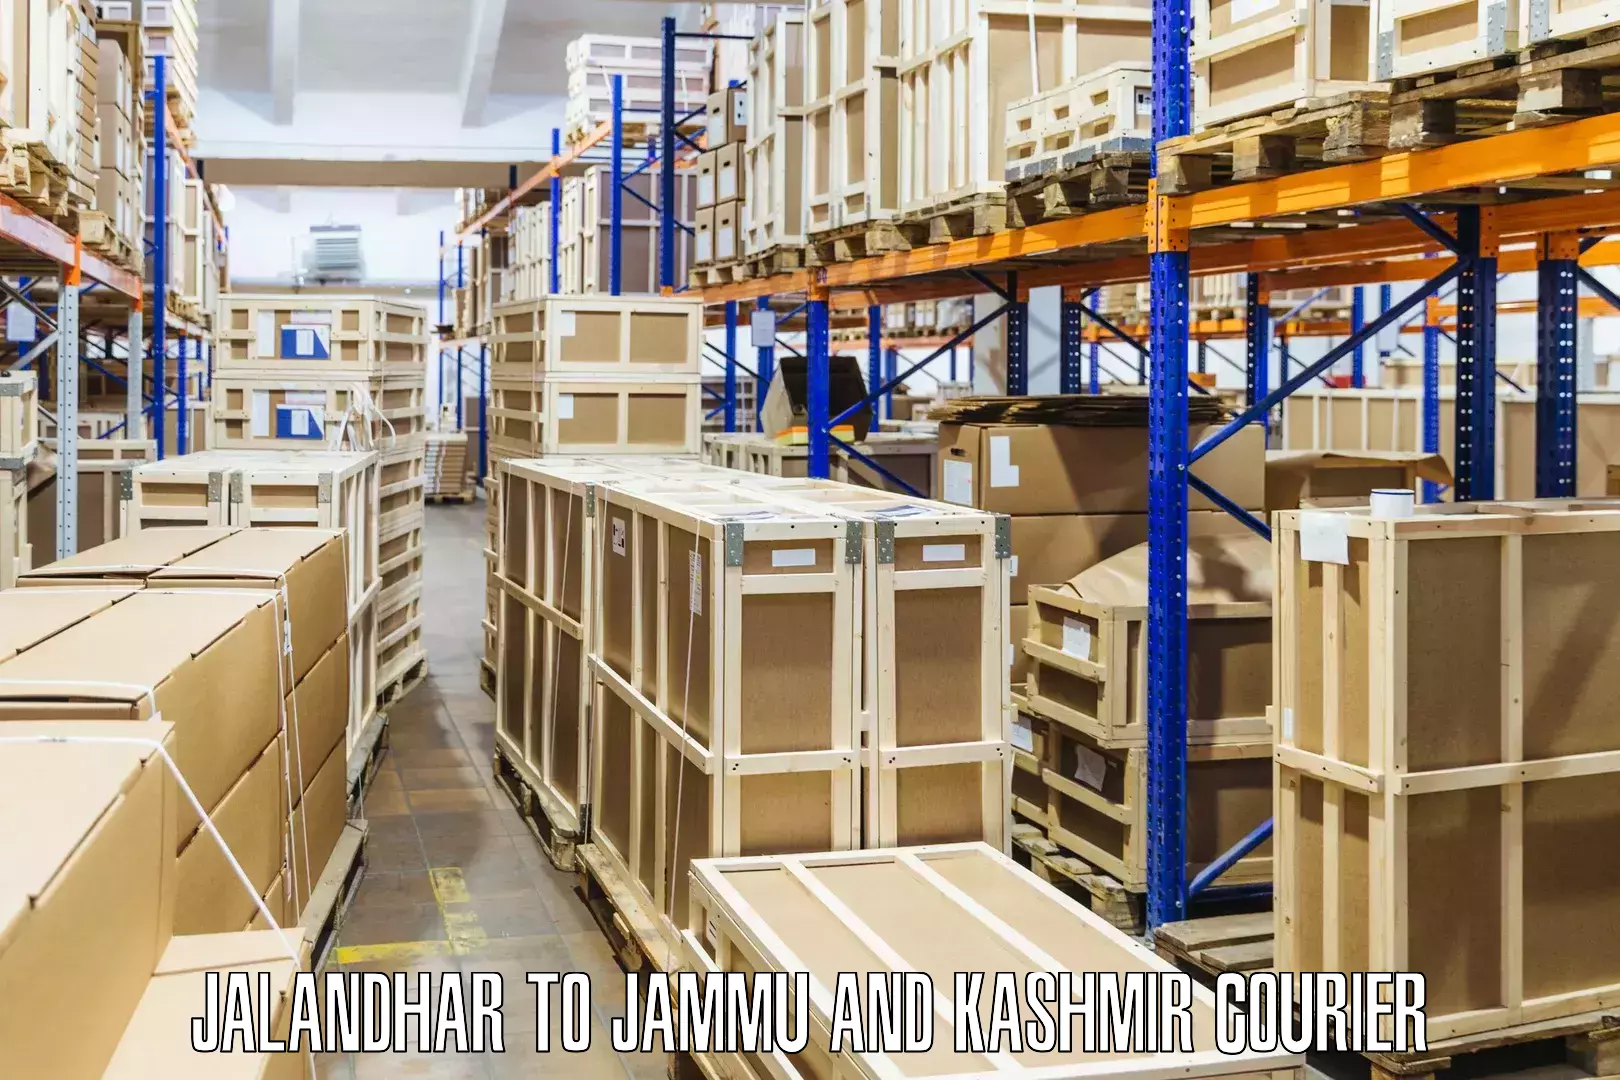 Global freight services Jalandhar to Jammu